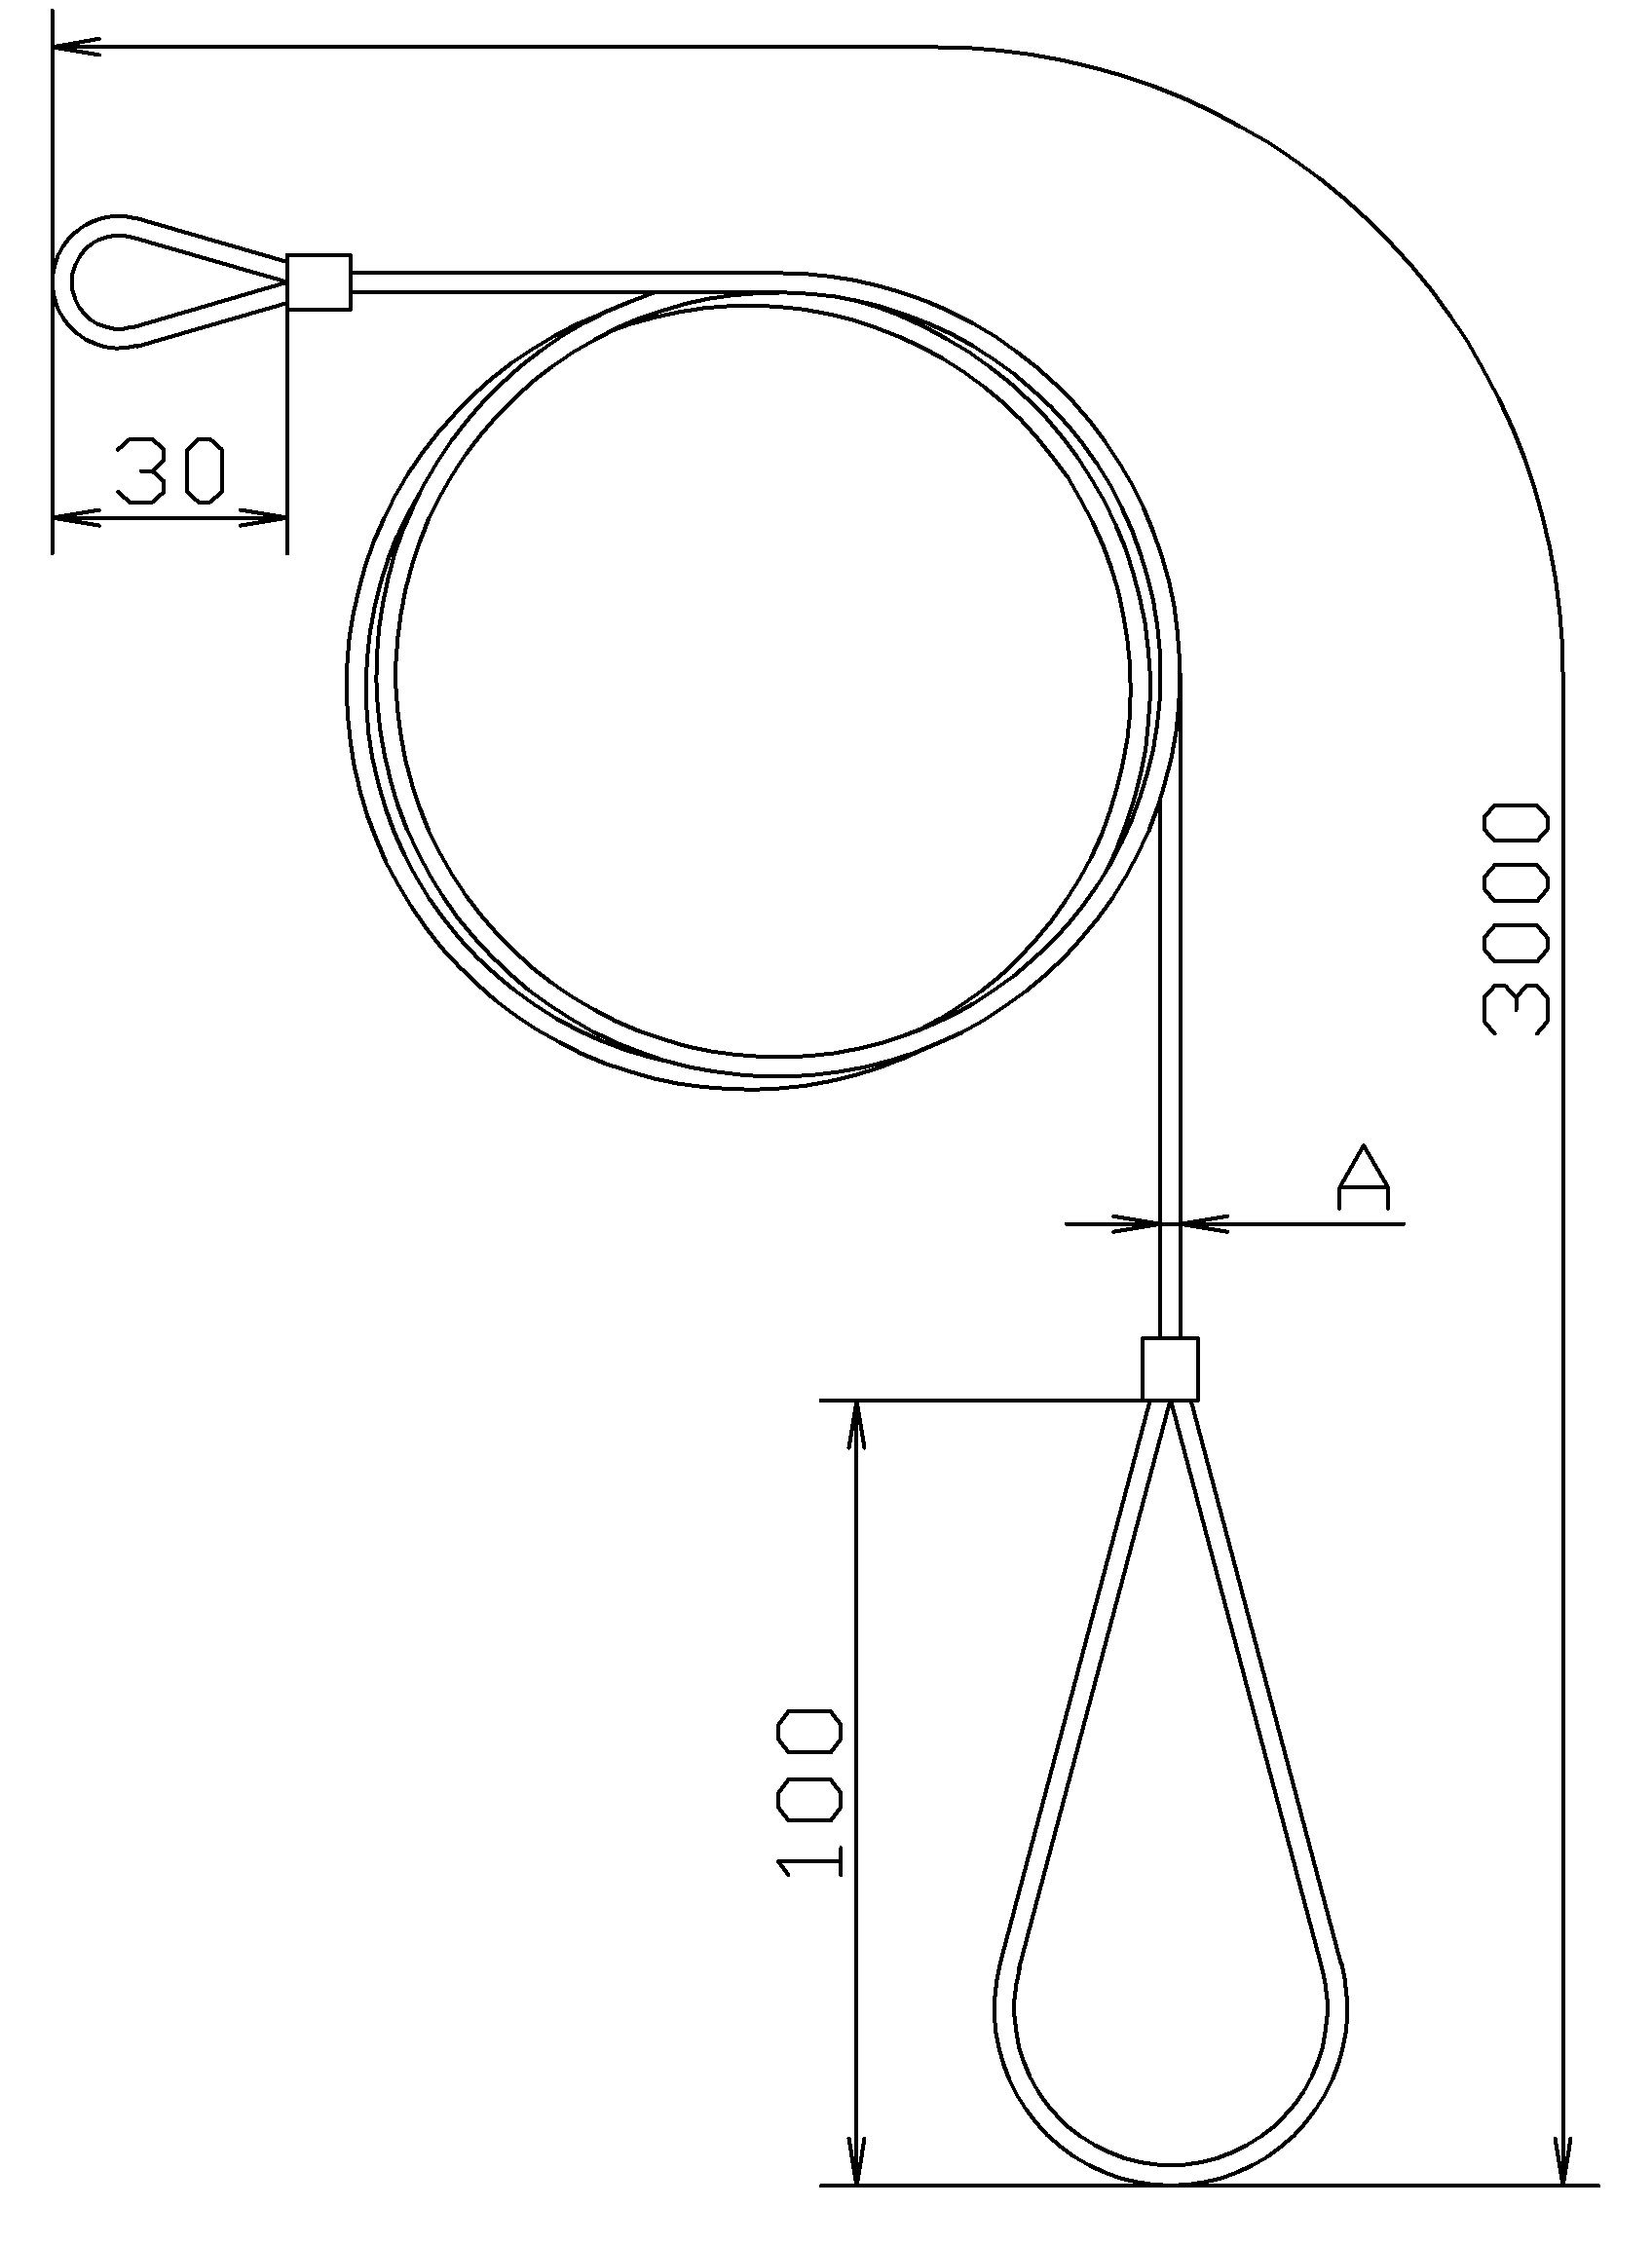 No.K2926 フート弁用ワイヤーロープの寸法と施工例 – 株式会社川本製作所